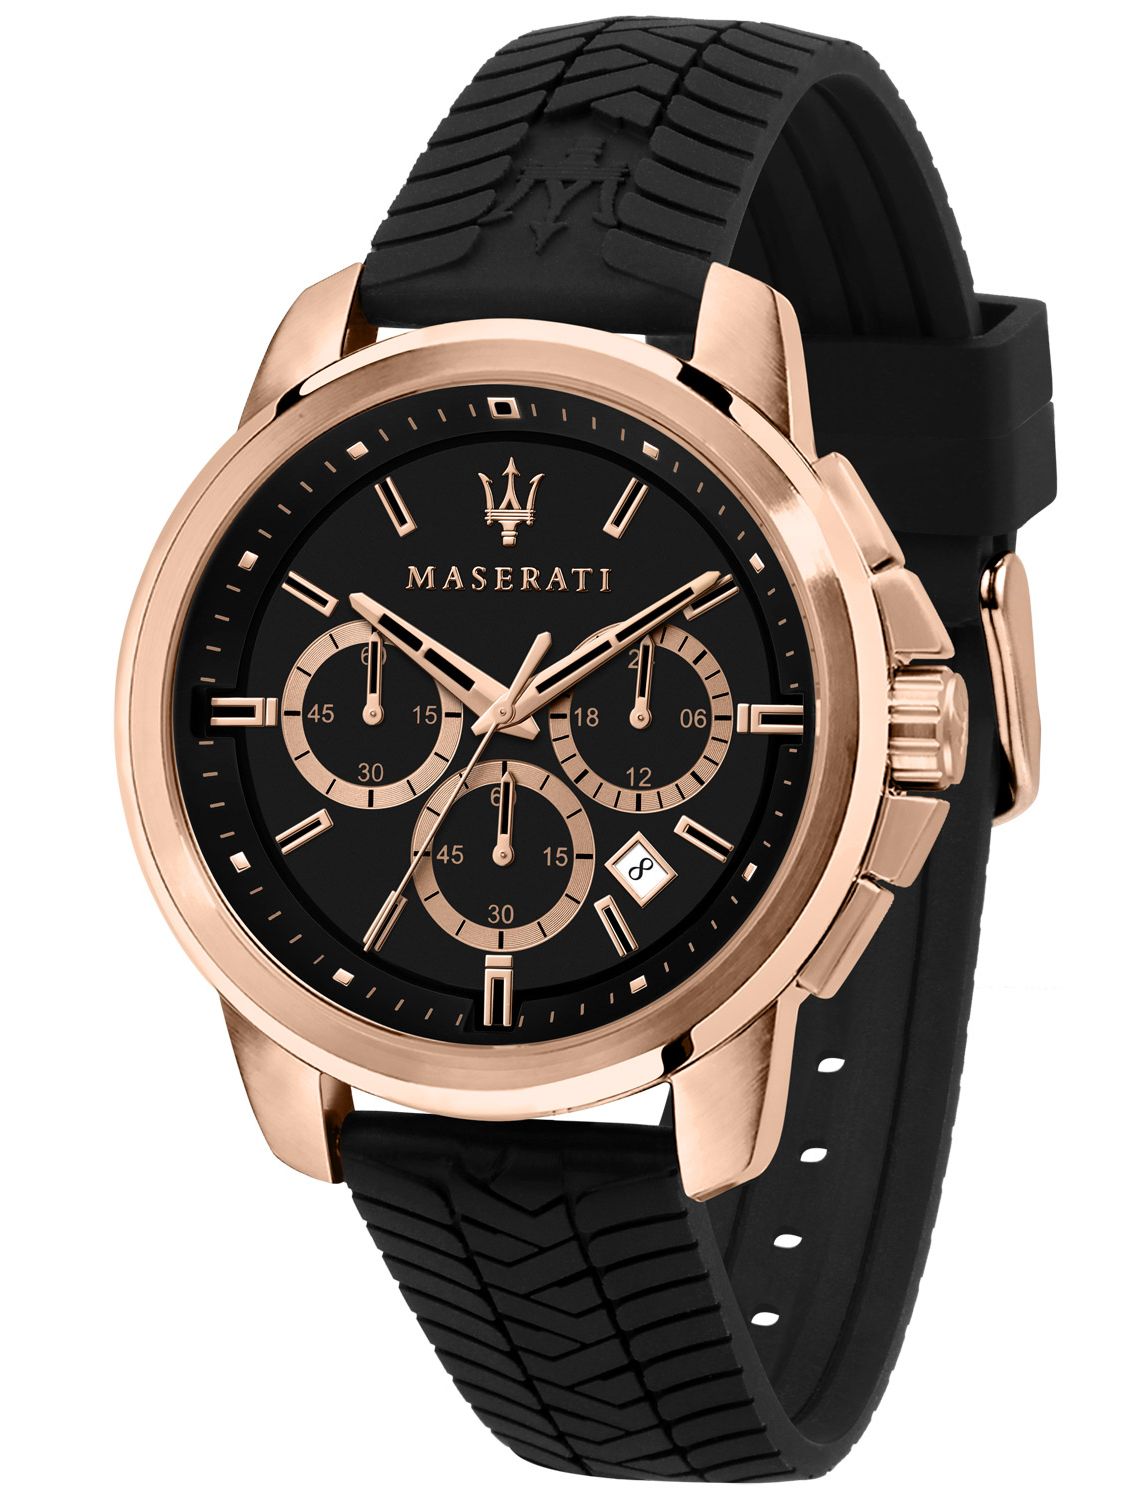 Eröffnungspreis für alle Produkte! Maserati Herrenuhr Chronograph Successo schwarz/roségold • R8871621012 uhrcenter